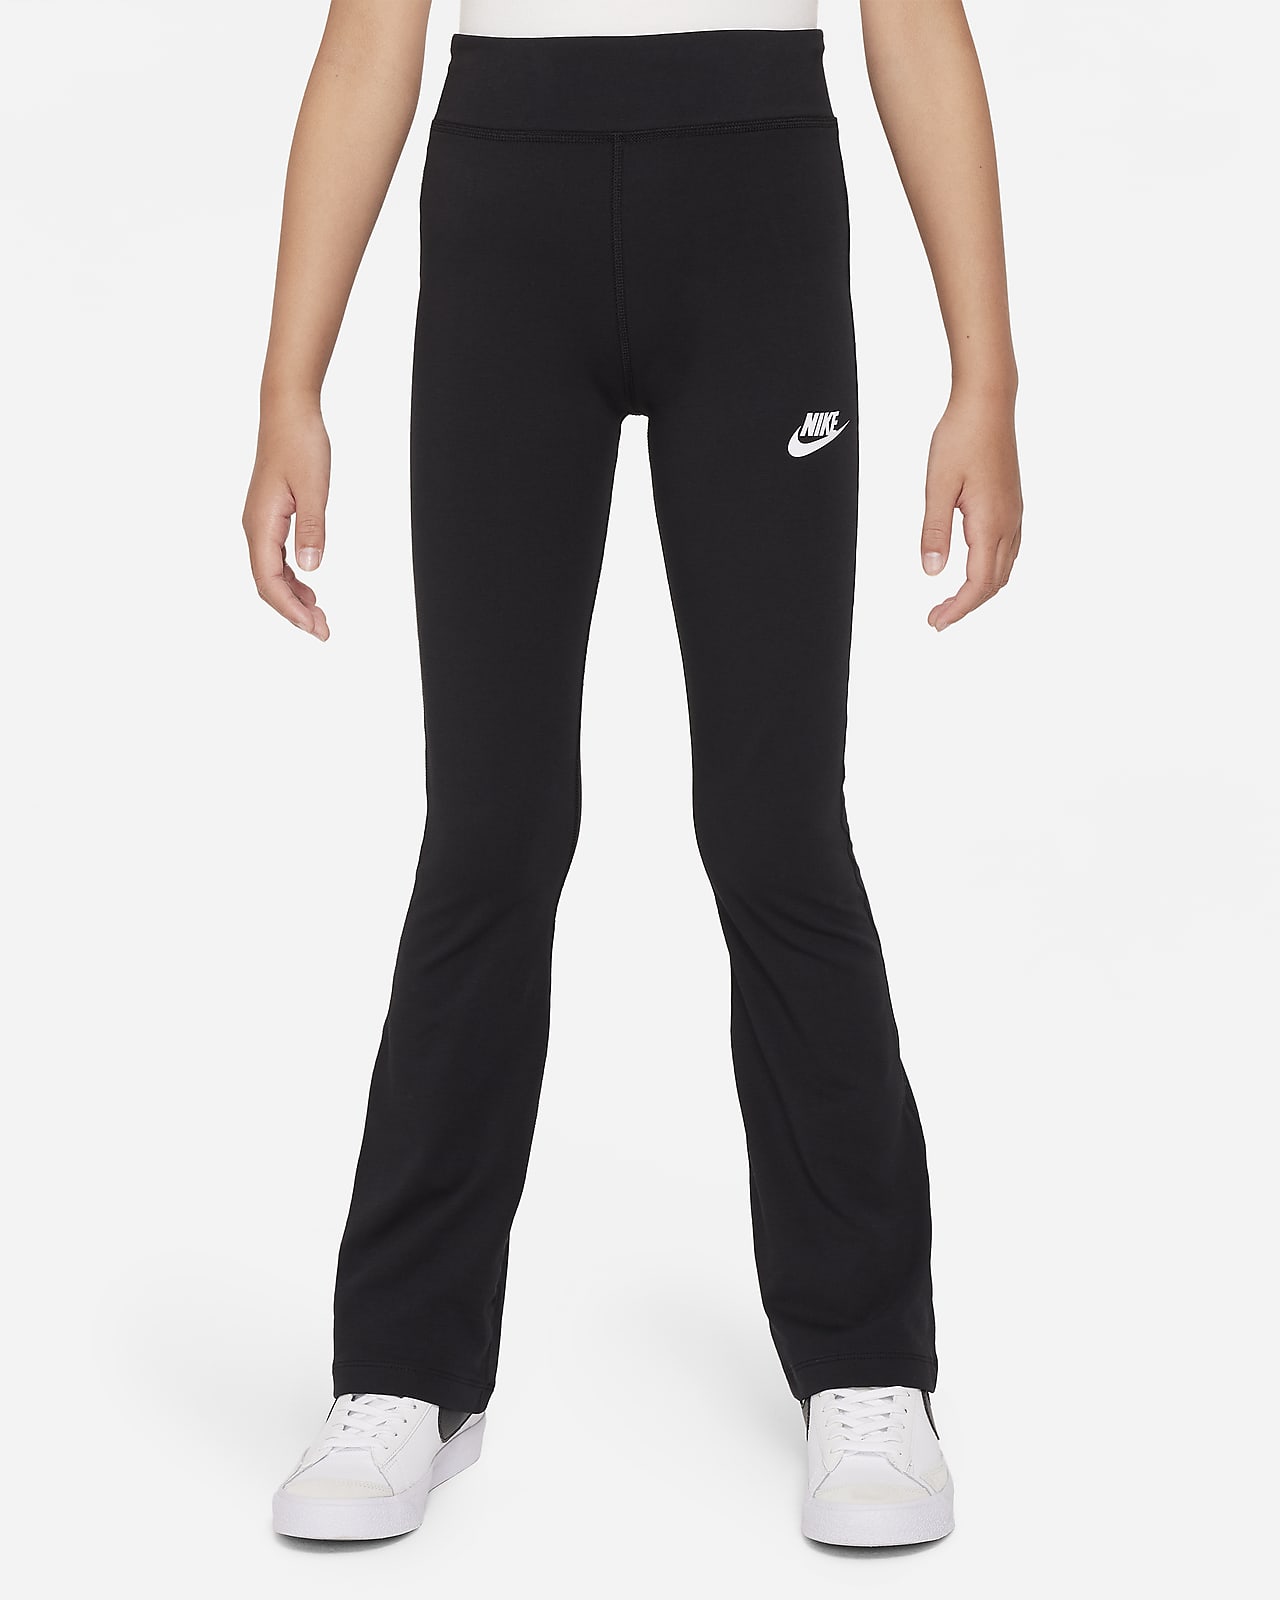 Kids' Nike Sweatpants & Leggings